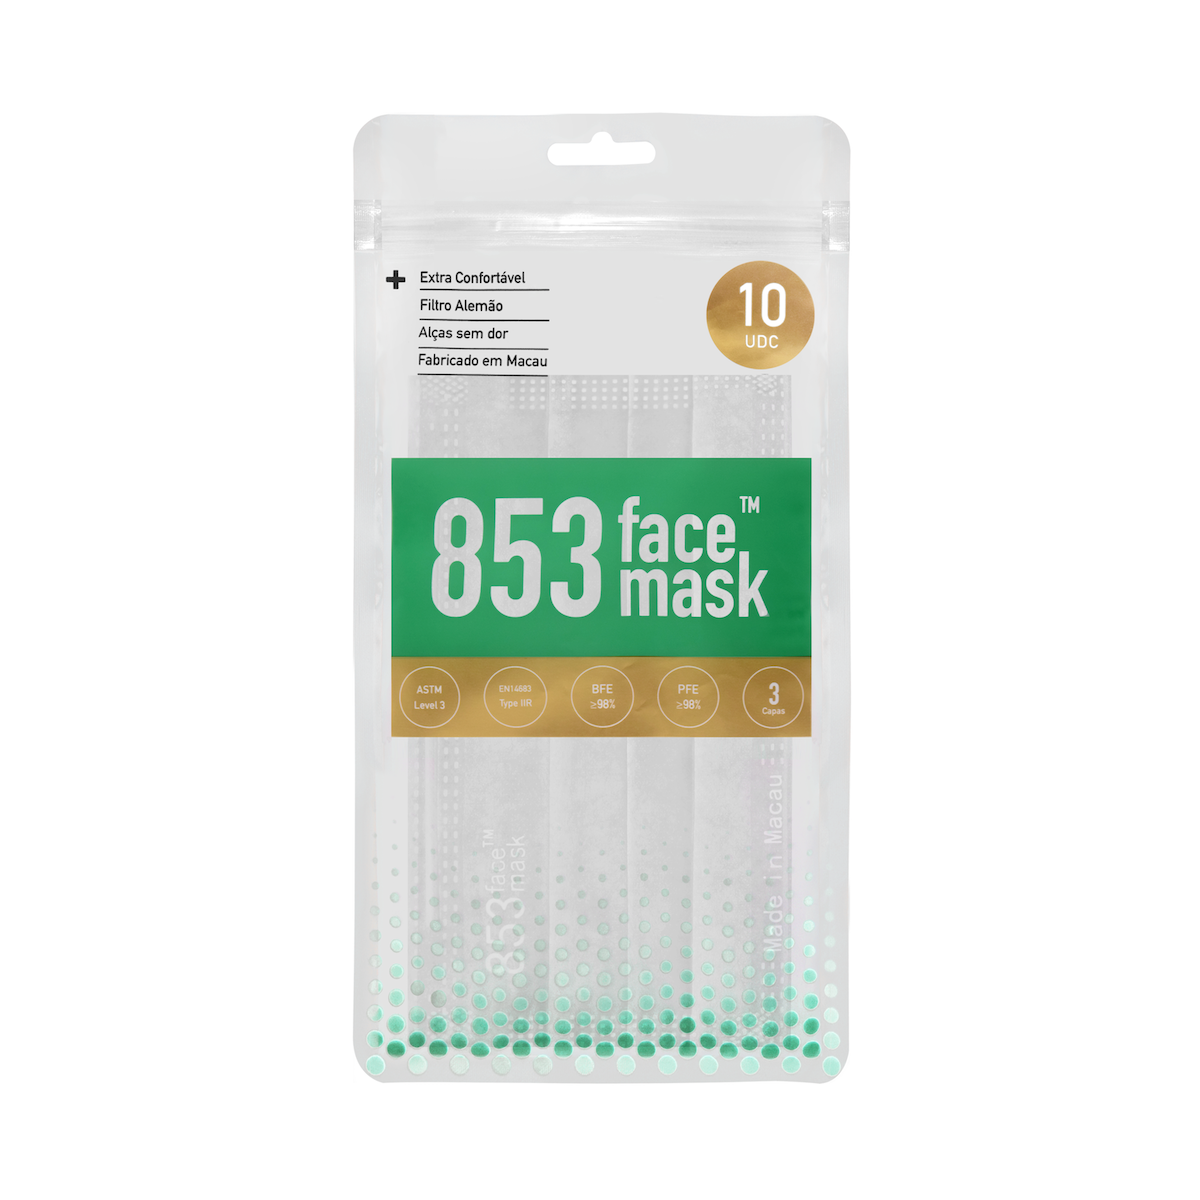 ASTM Level 3 口罩（白色）非獨立包裝10片